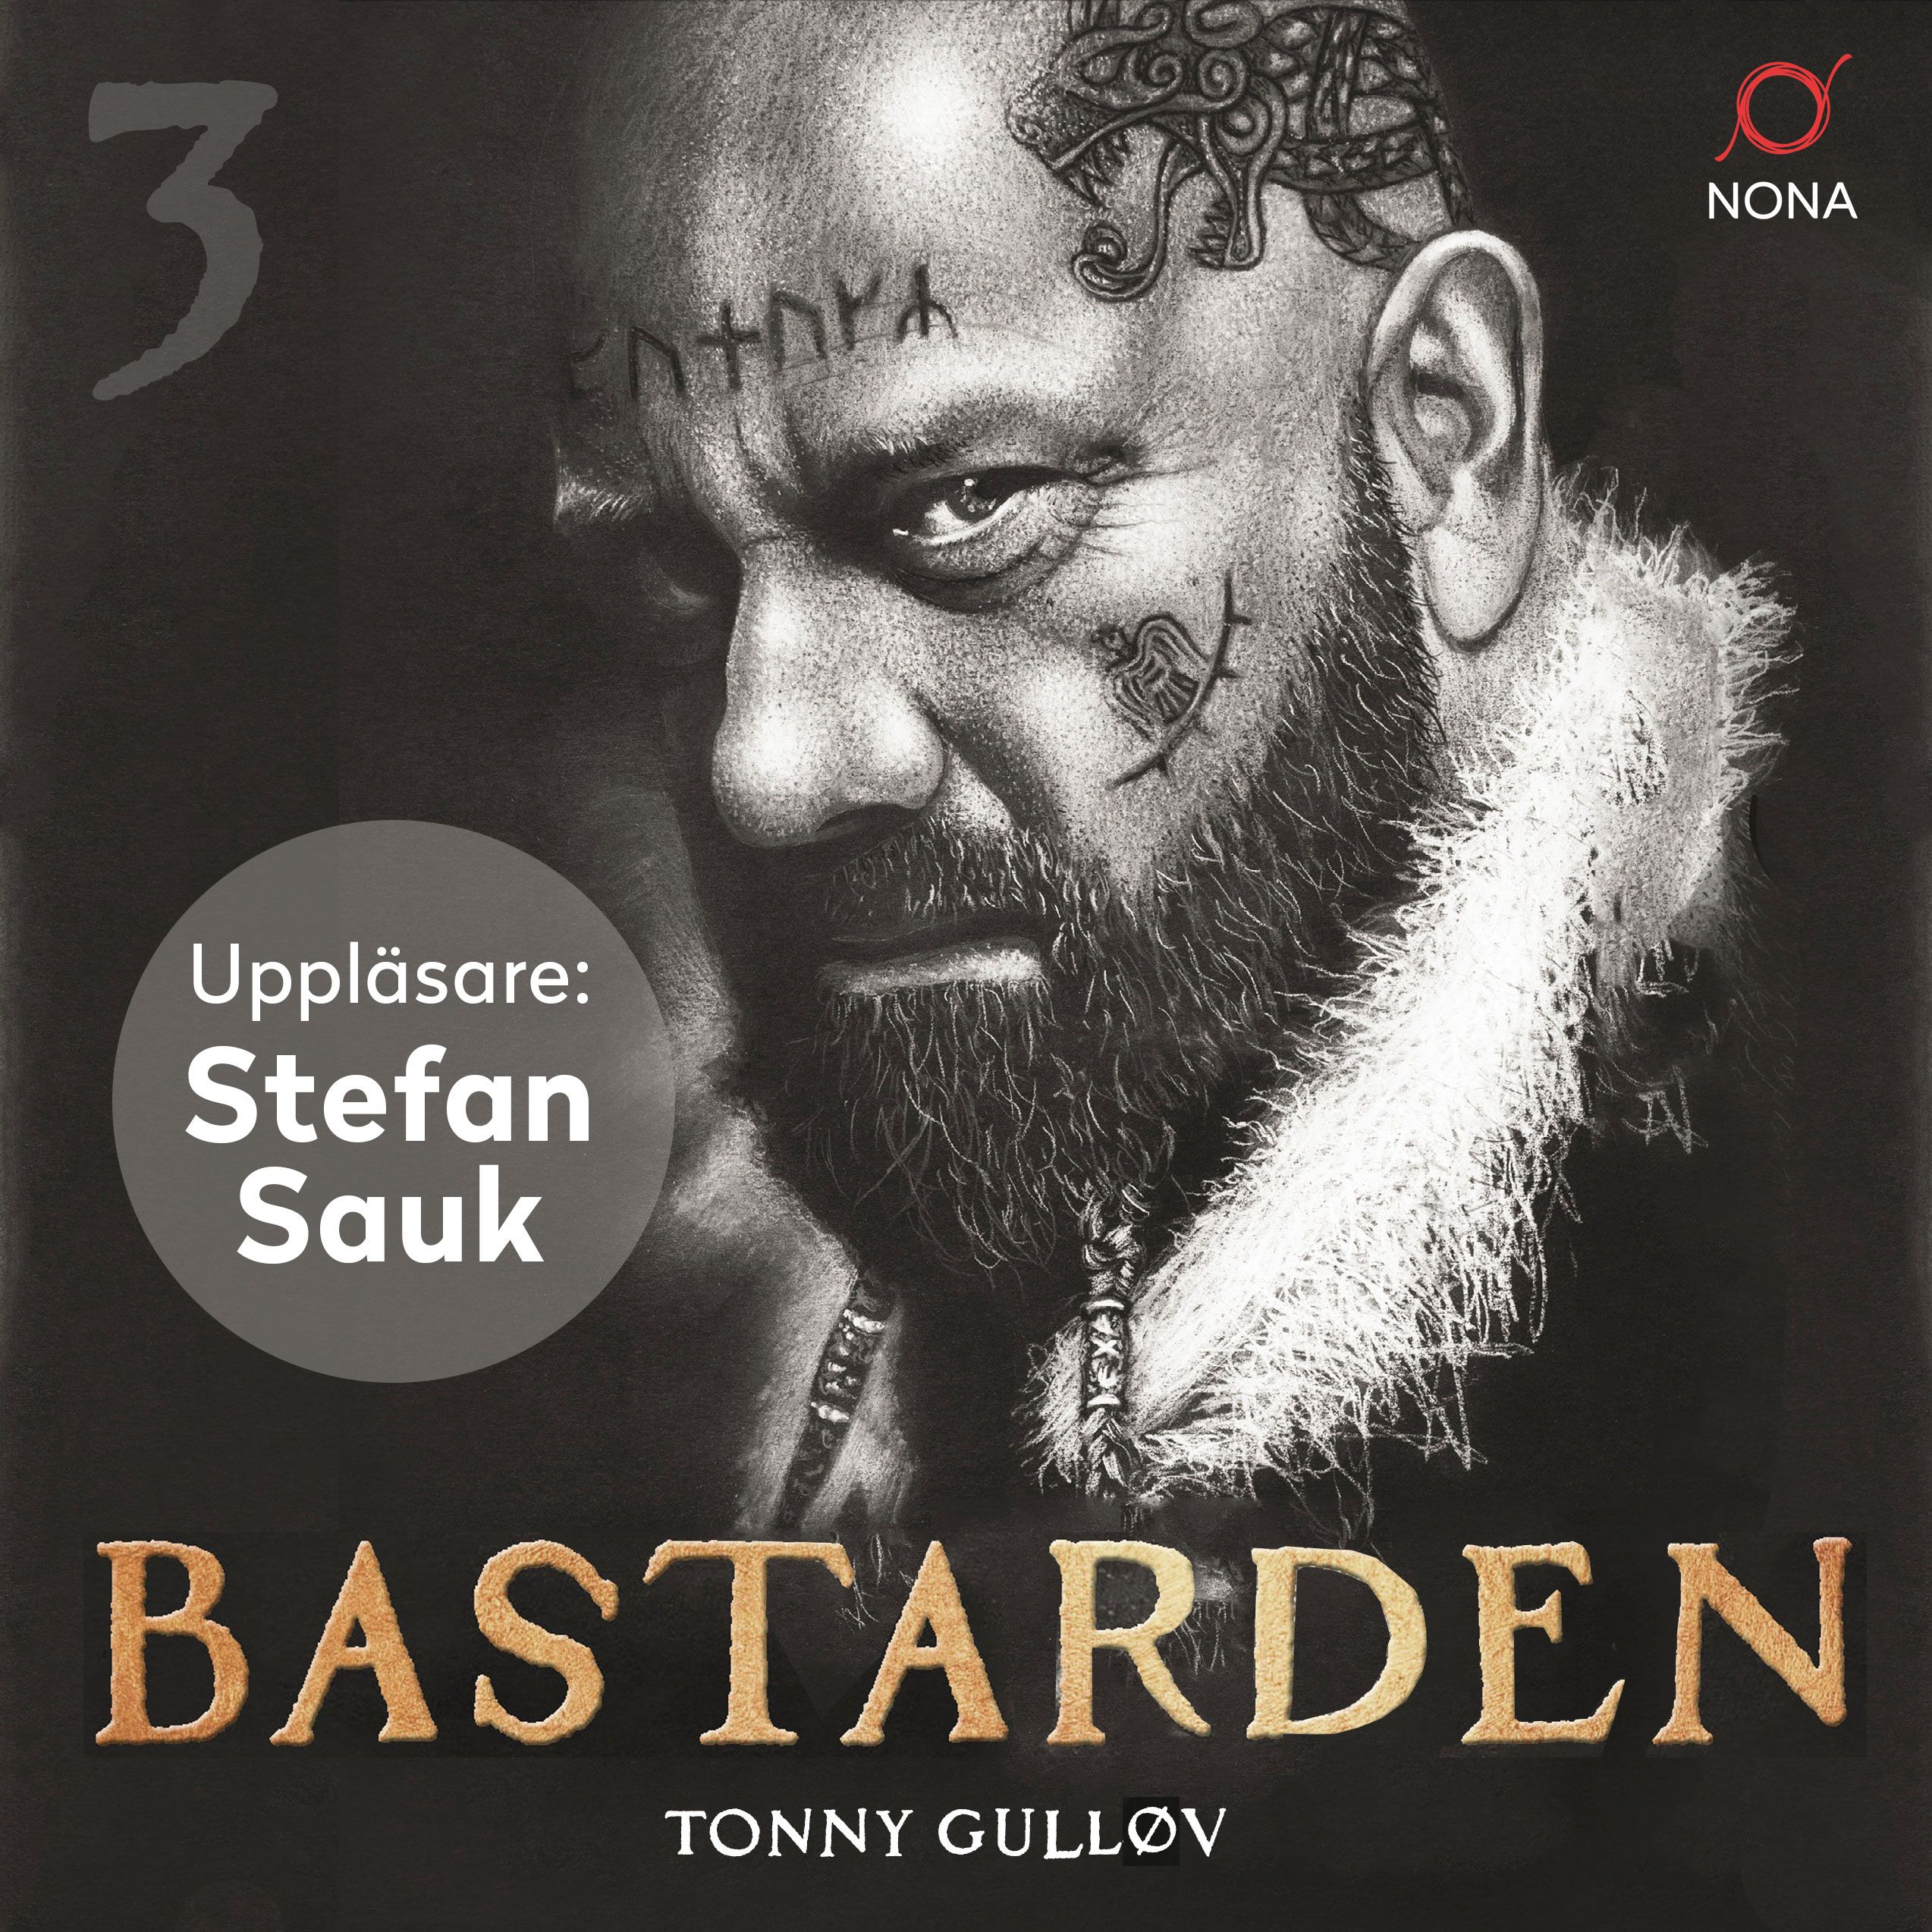 Bastarden, lydbog af Tonny Gulløv